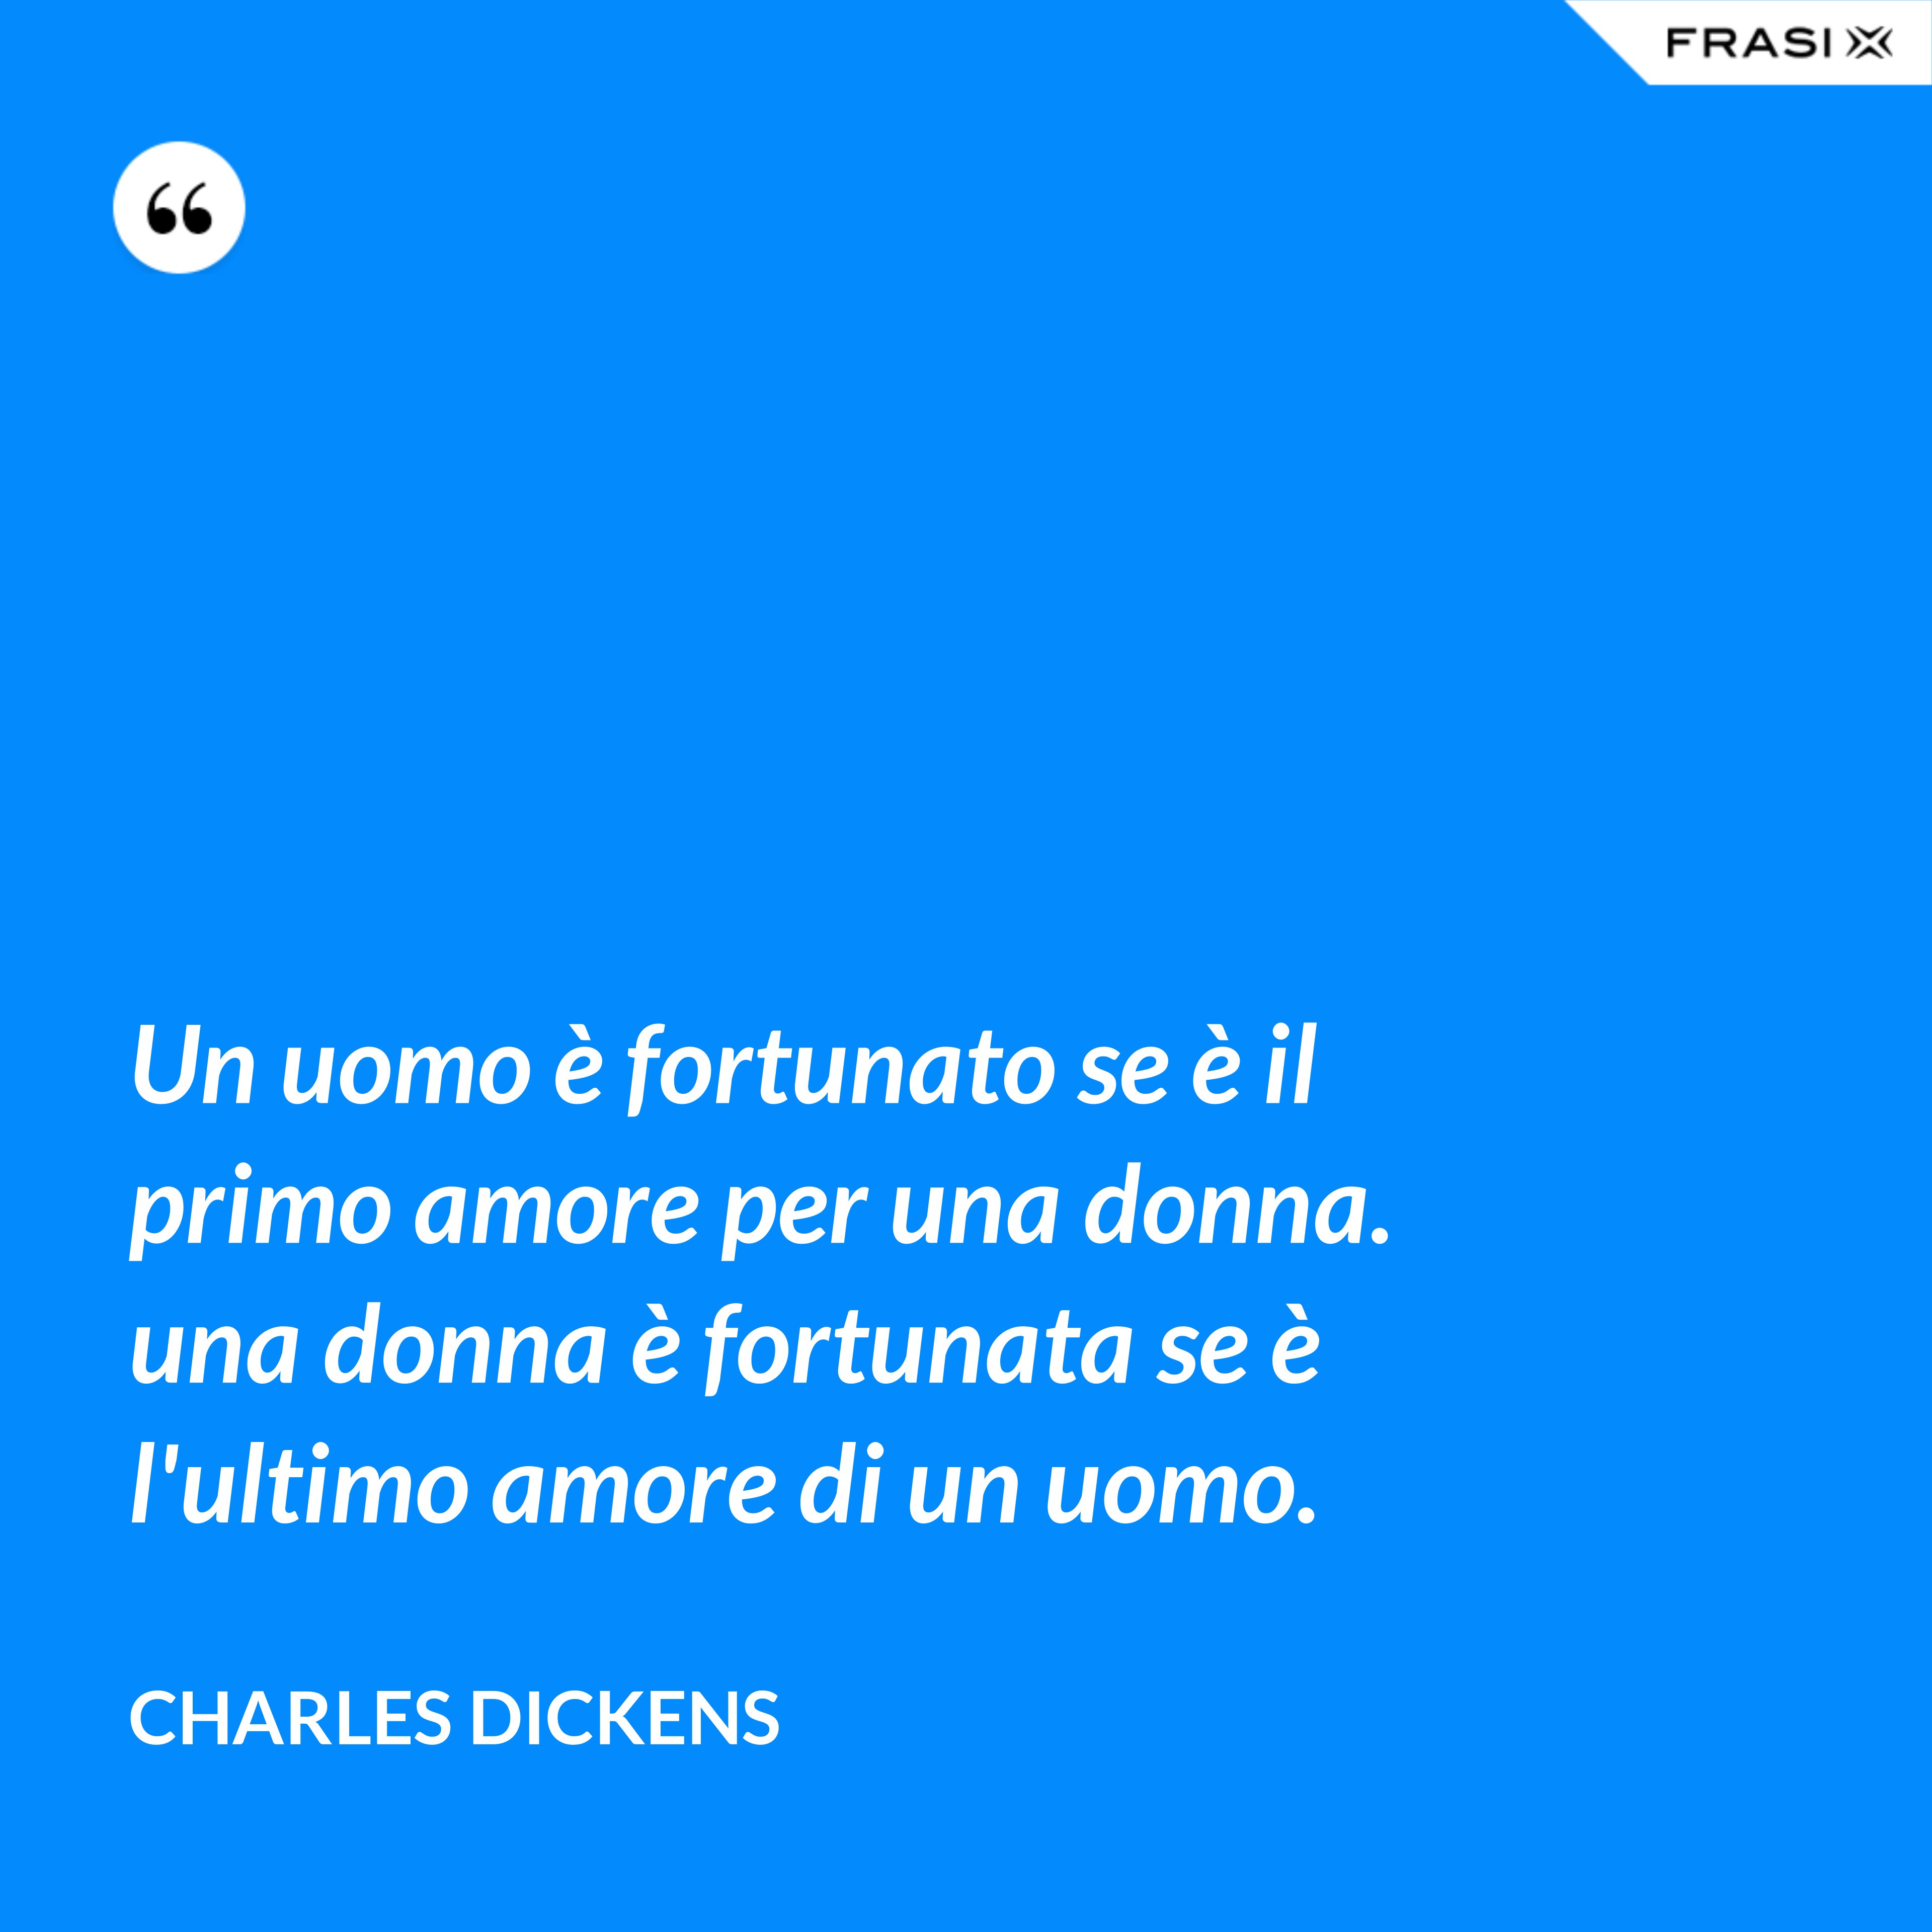 Un uomo è fortunato se è il primo amore per una donna. una donna è fortunata se è l'ultimo amore di un uomo. - Charles Dickens